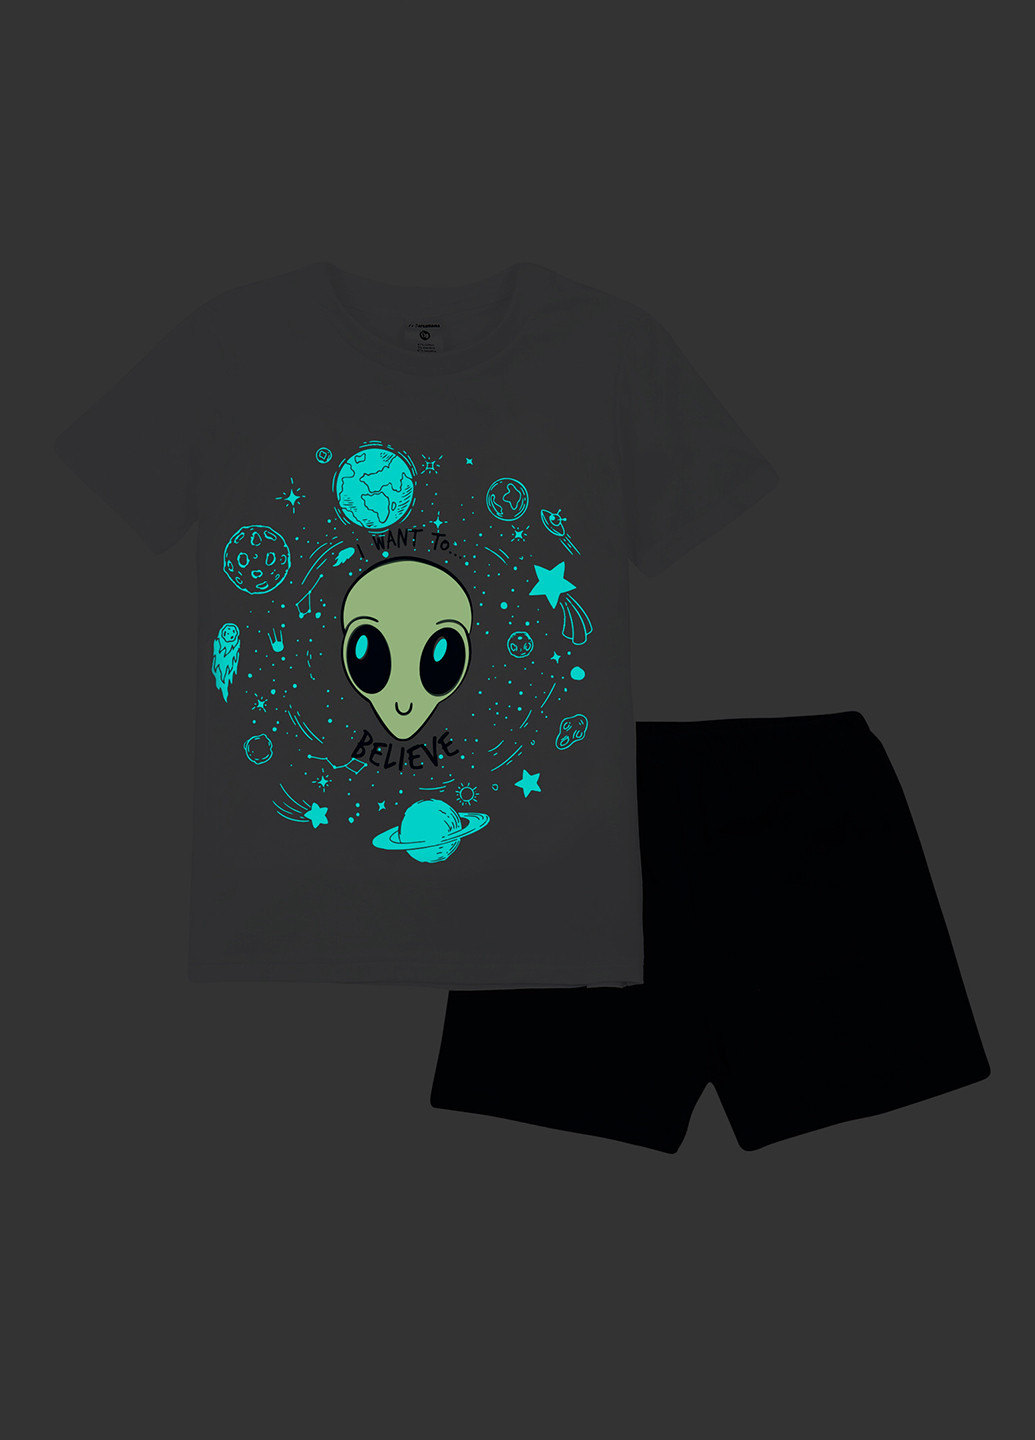 Комбинированная всесезон пижама (футболка, шорты) футболка + шорты Garnamama